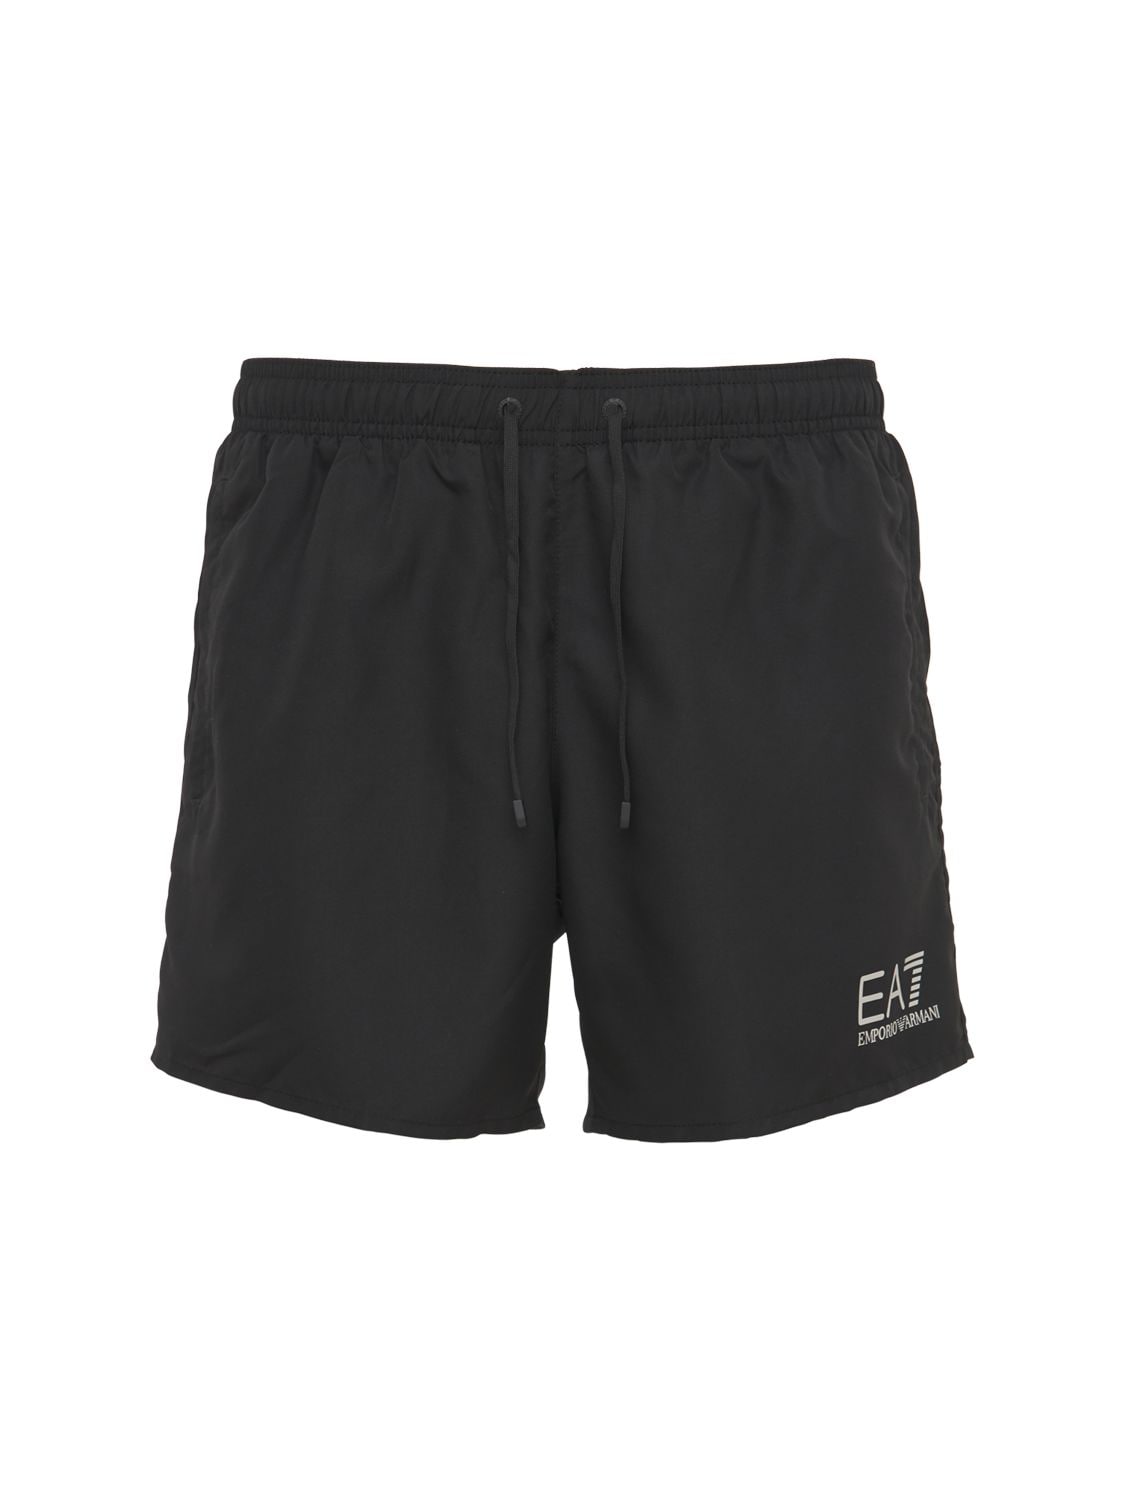 Ea7 Logo Nylon Swim Shorts In Black